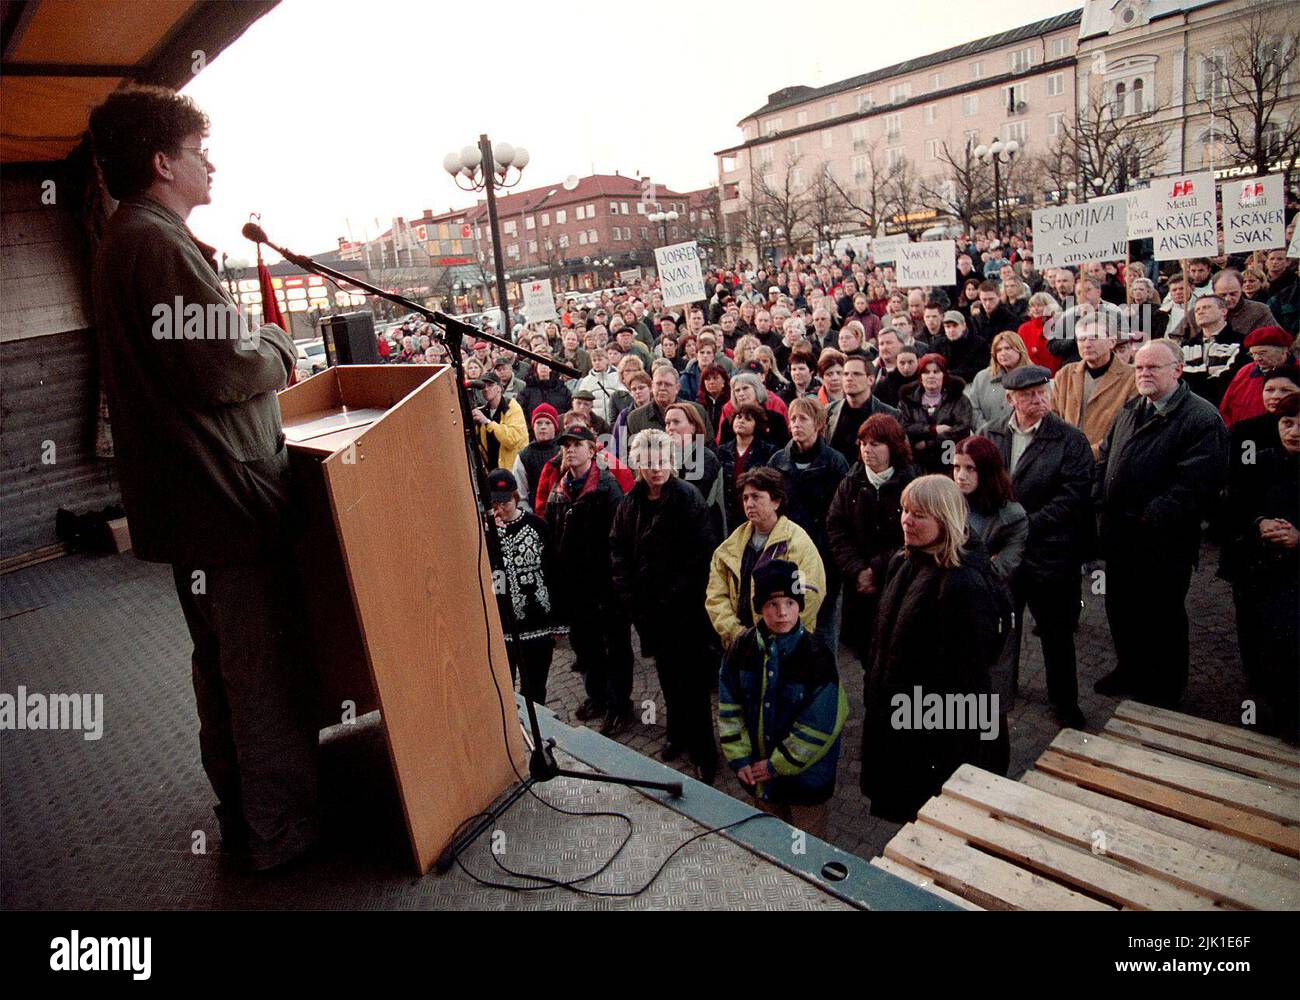 Manifestación contra el cierre por parte de Sanmina-SCI de la fábrica de Motala, Suecia. Lars Stjernqvist, político, en el escenario. Foto de stock